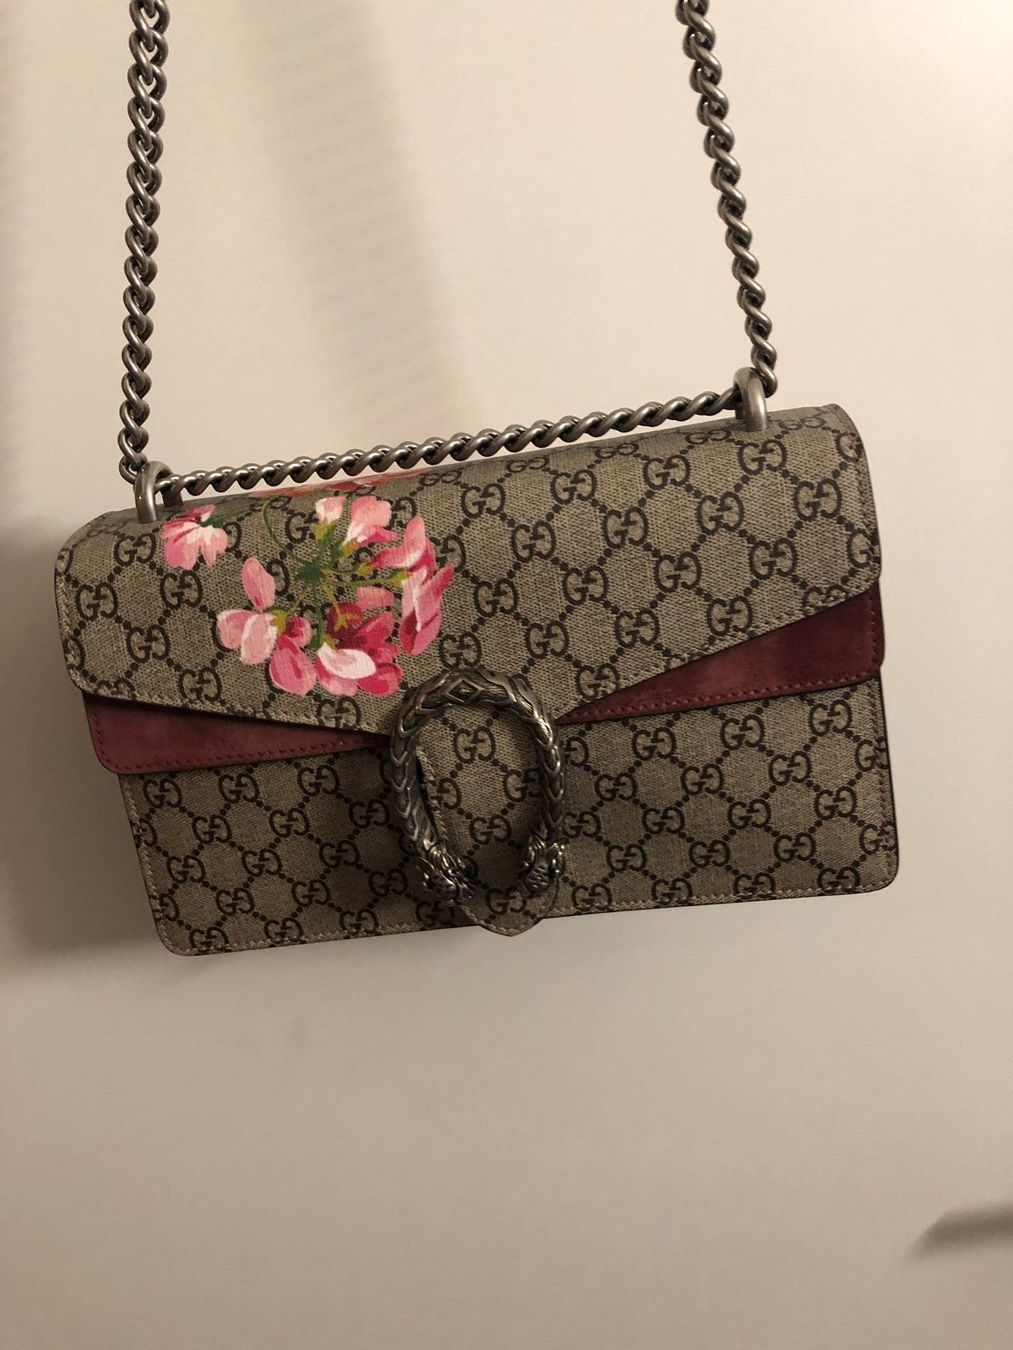 Gucci Dionysus Blooms Tasche (Original) kaufen auf Ricardo